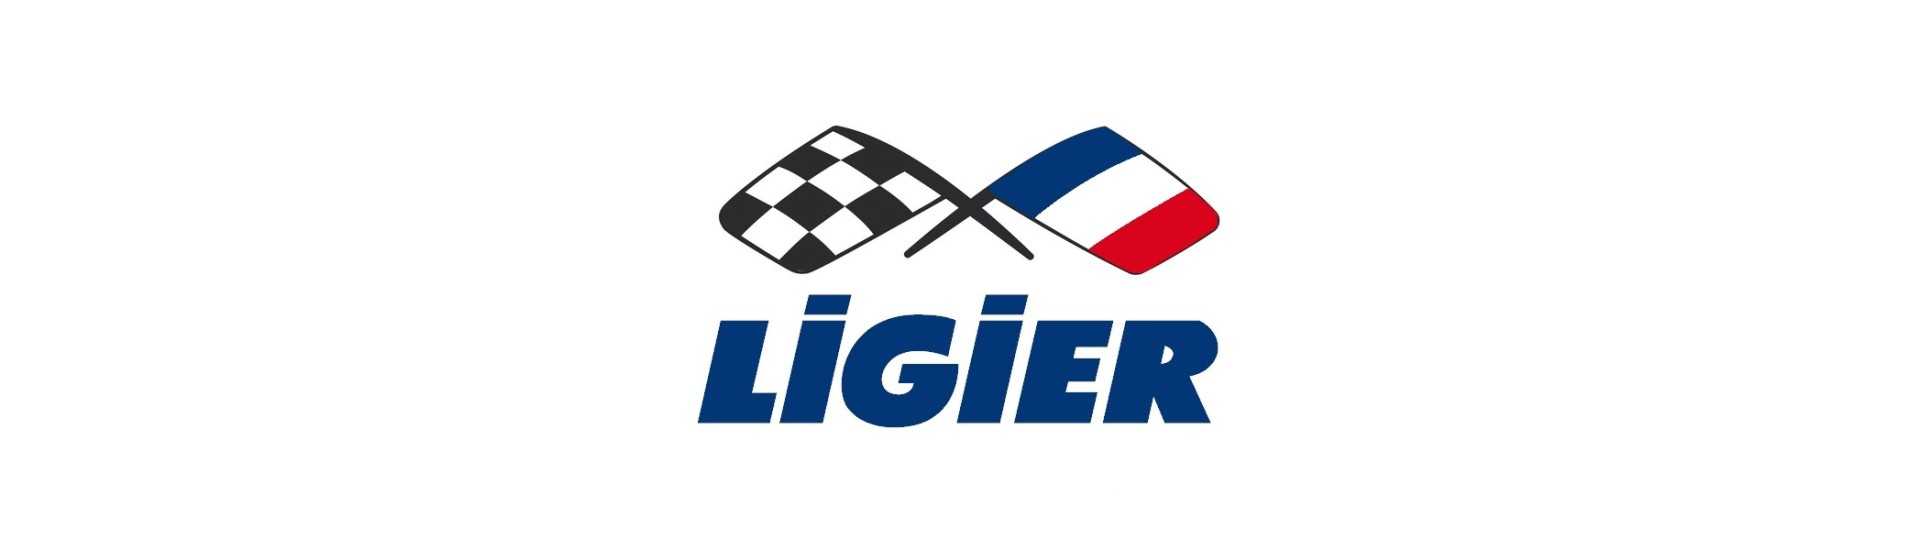 Otsikko parhaaseen hintaan autolle ilman ajokorttia Ligier